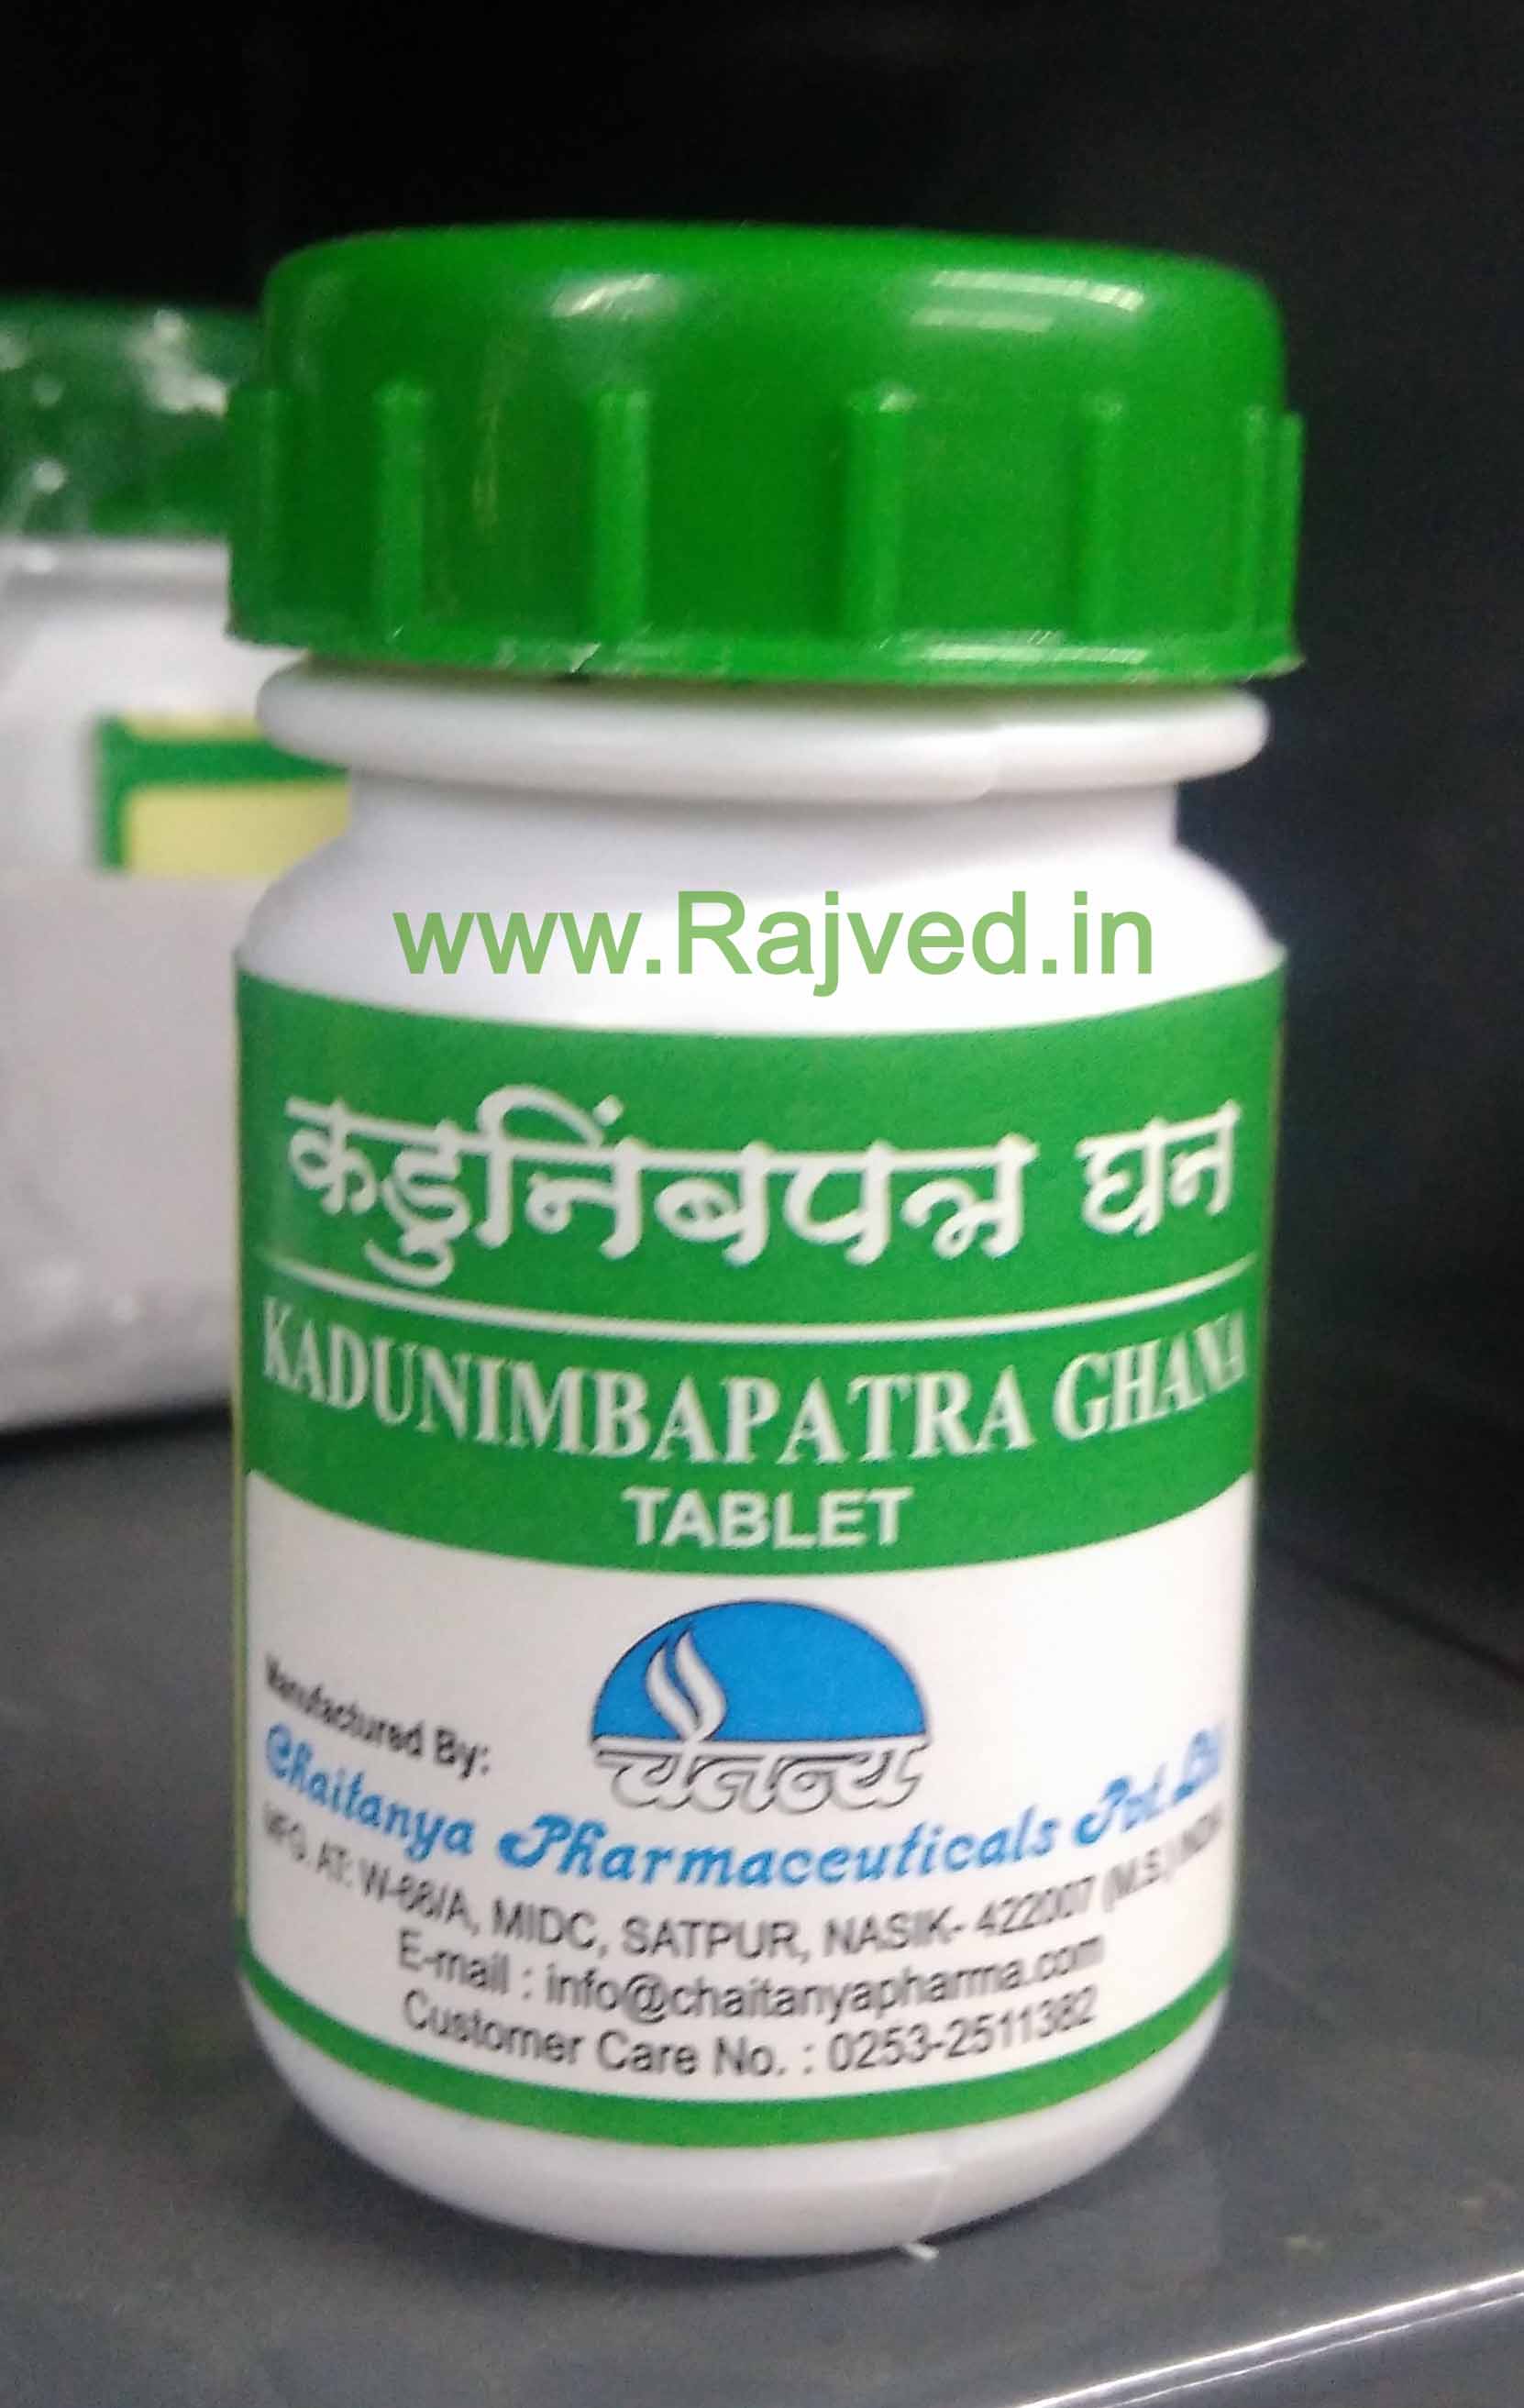 kadunimbapatra ghana 60 tab upto 20% off chaitanya pharmaceuticals